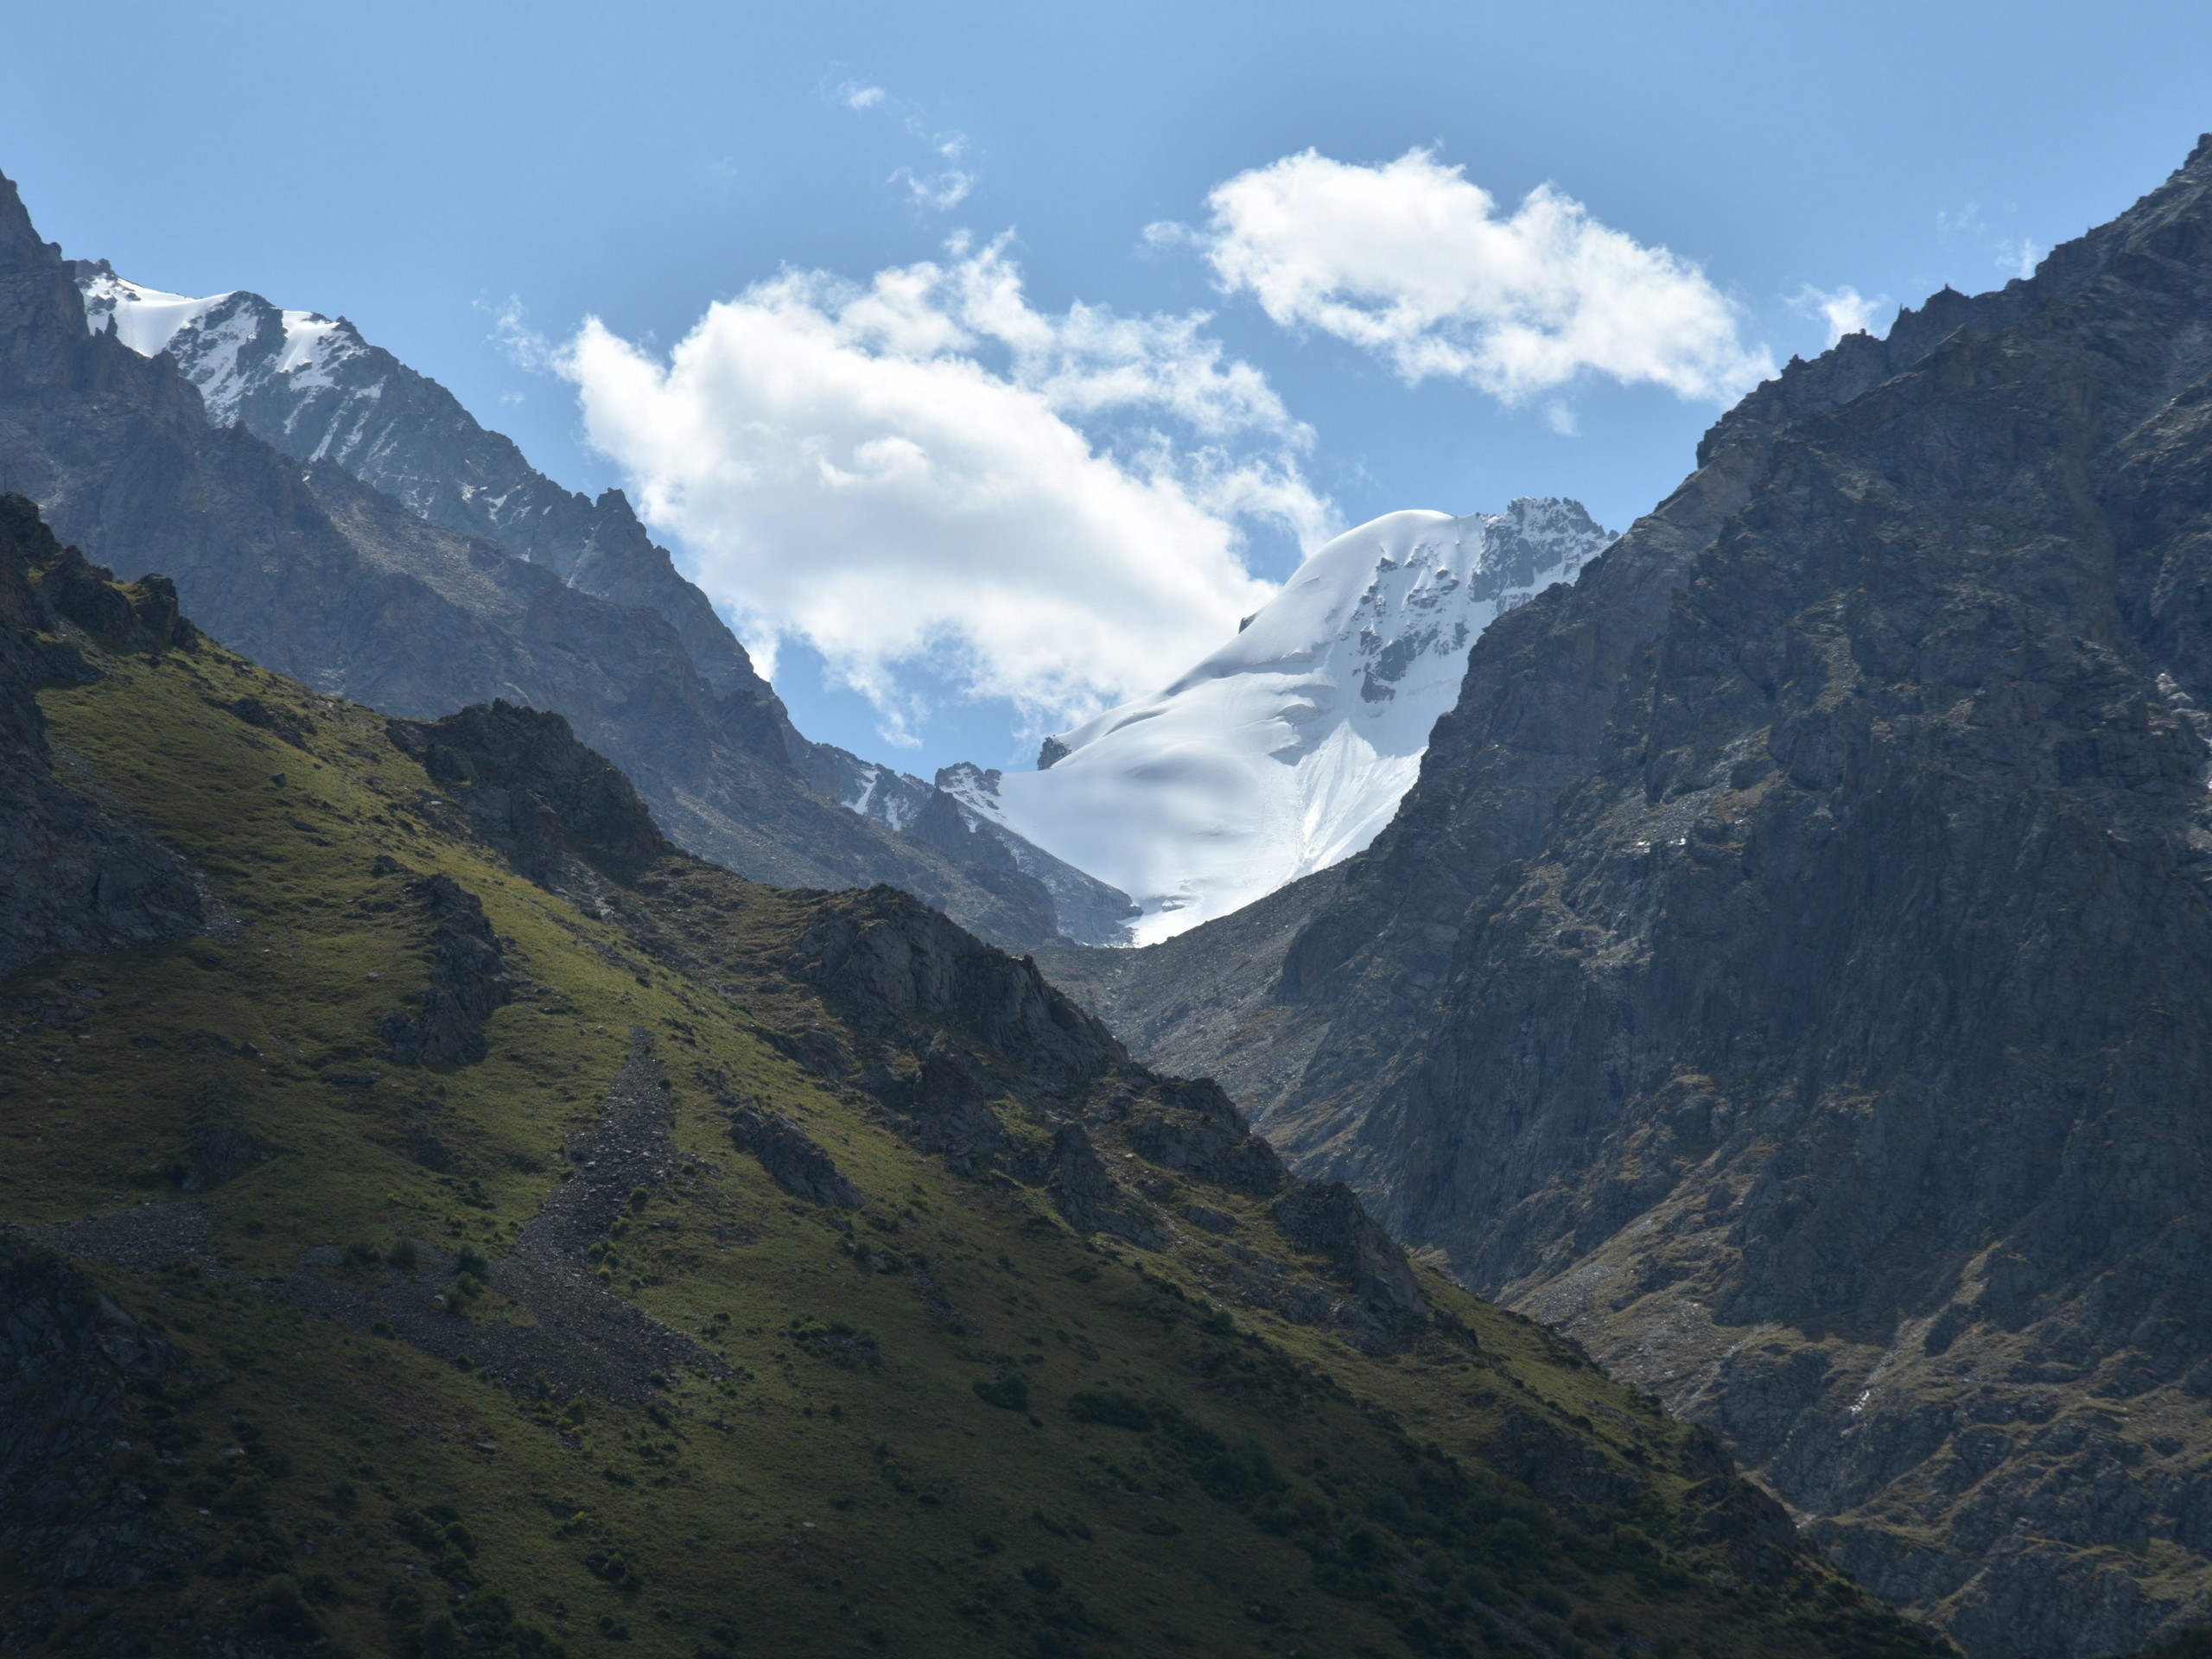 Snowy peaks in Kyrgyzstan mountains